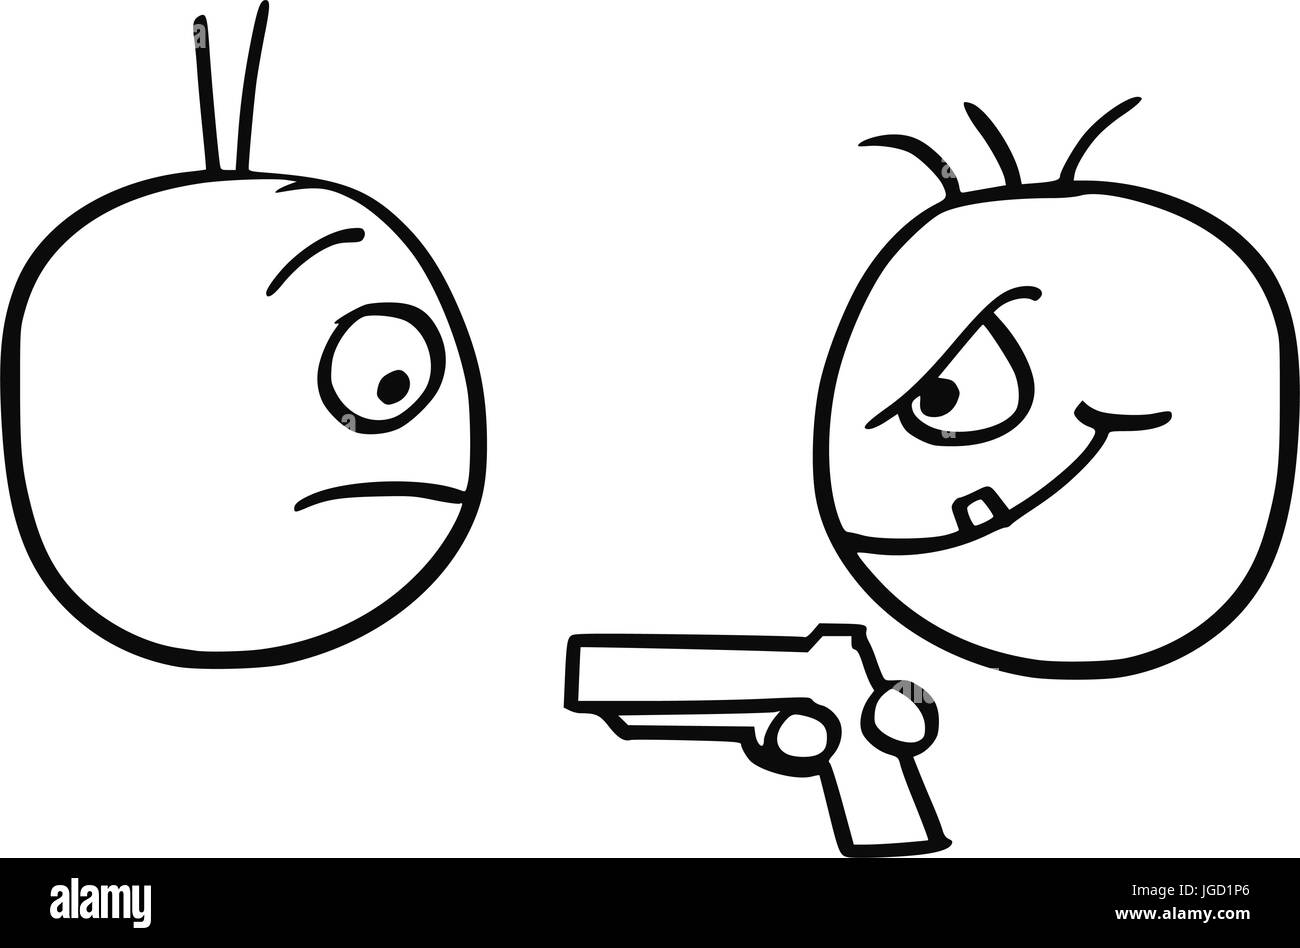 Cartoon-Grafiken von Mann mit Hand Pistole Pistole Waffe mugged von Kriminellen angegriffen Stock Vektor